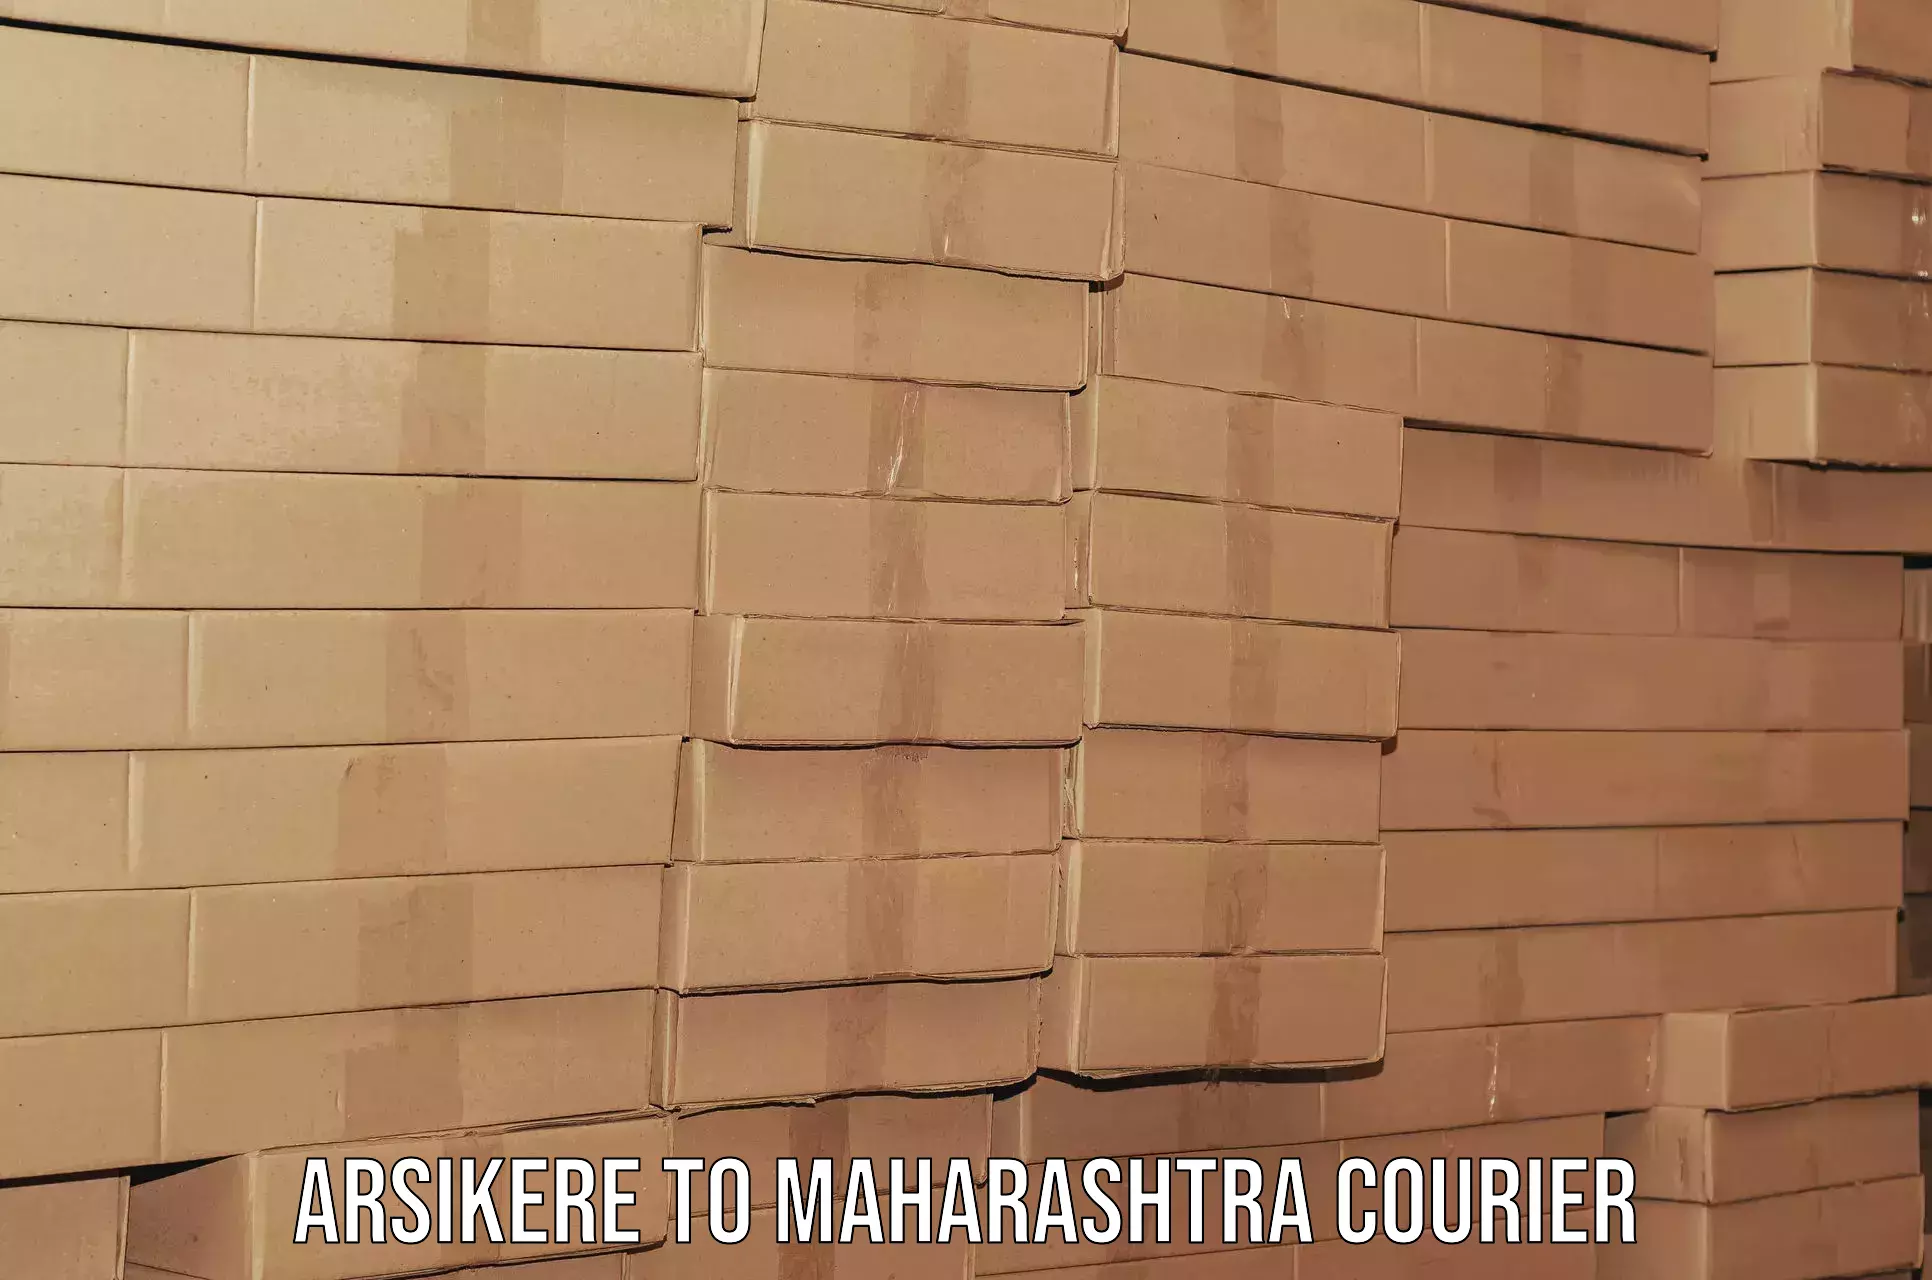 Professional moving company Arsikere to Maharashtra